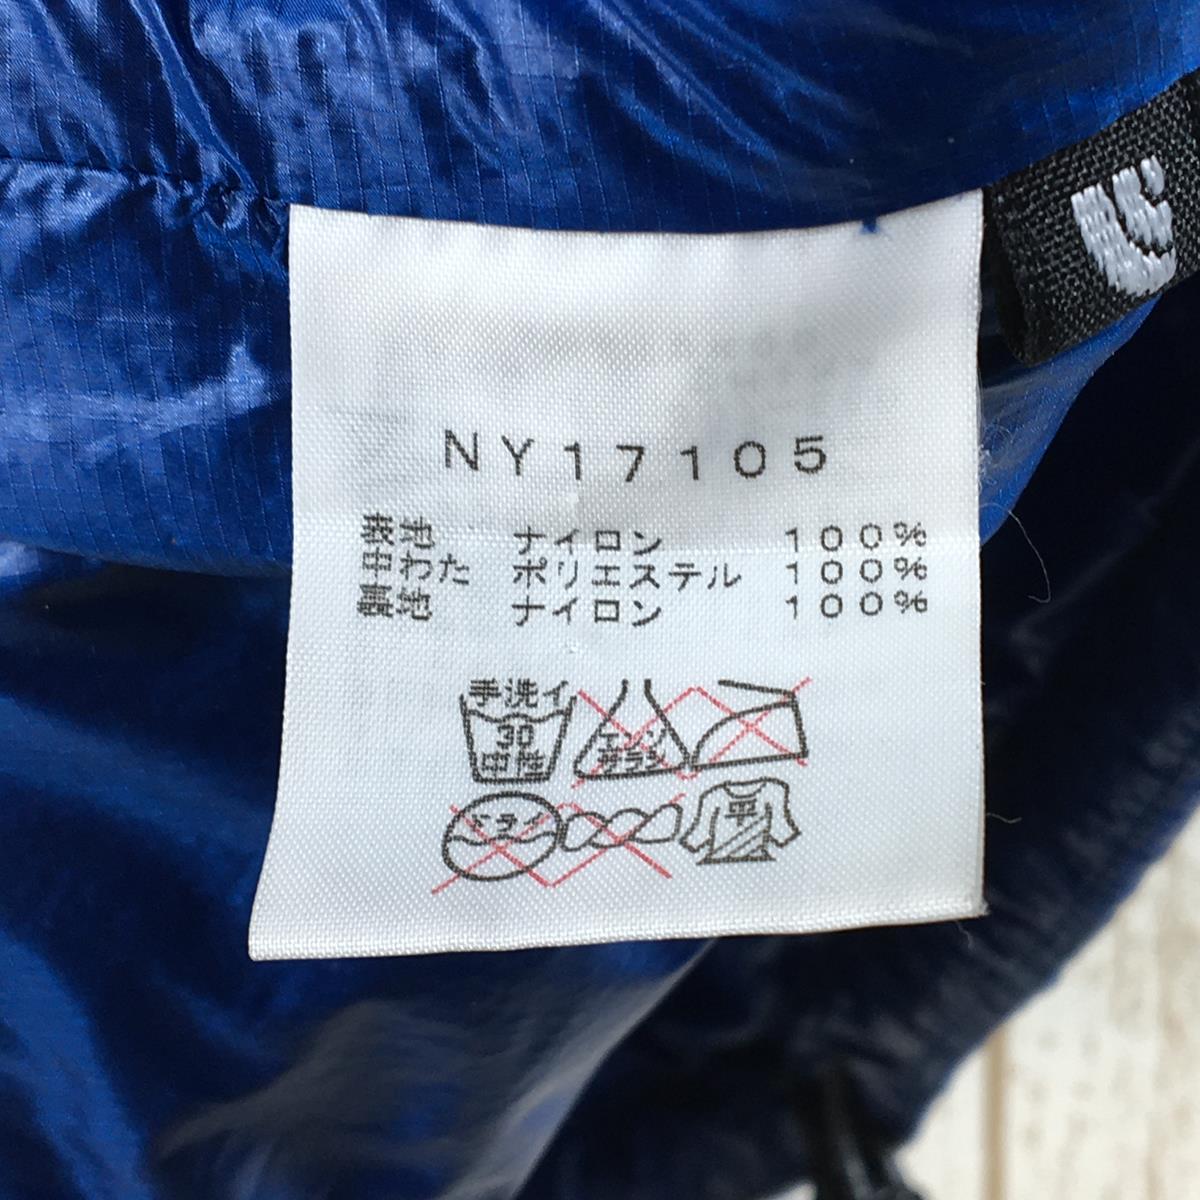 【MEN's M】 ノースフェイス レッドポイント ライト ジャケット Redpoint Light Jacket サーモボール インサレーション NORTH FACE NY17105 ブルー系